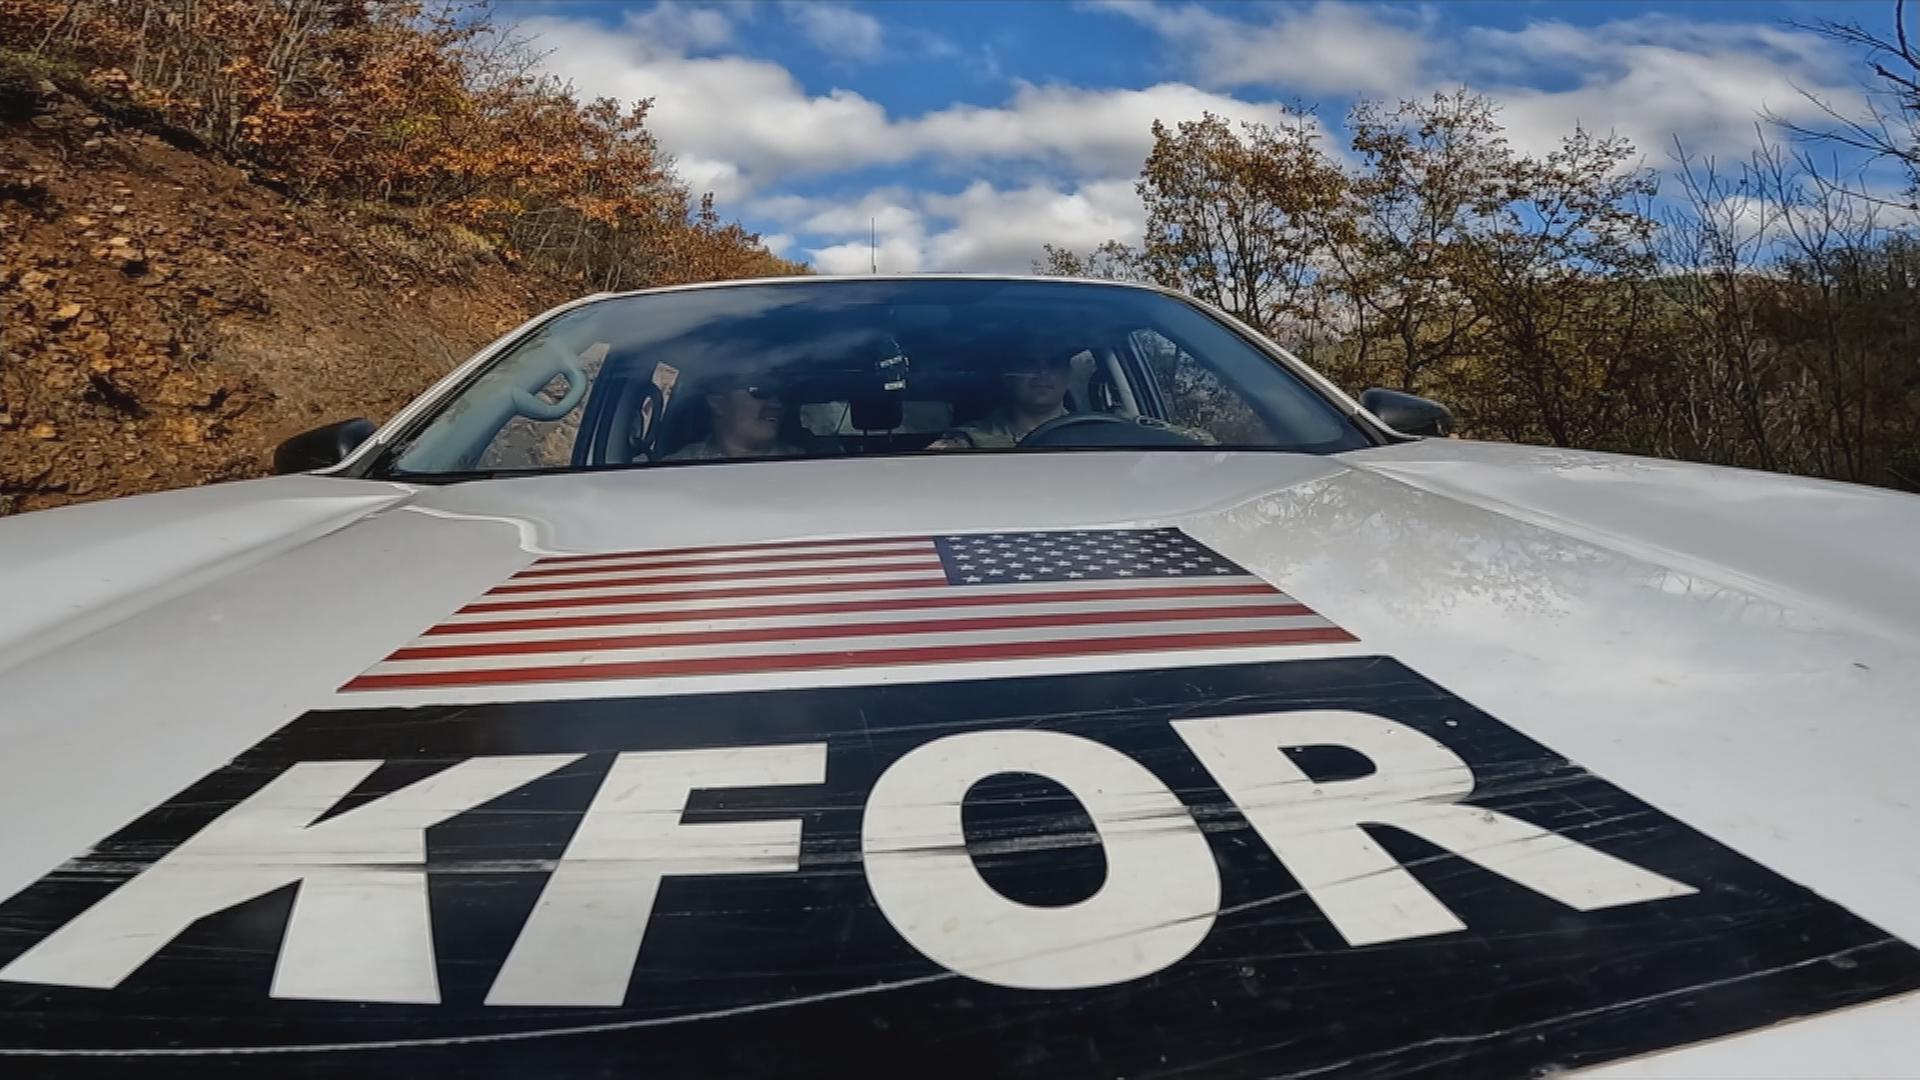 Auto mit Aufschrift "KFOR" und amerikanischer Flagge einer Patrouille der KFOR-Truppen im Kosovo